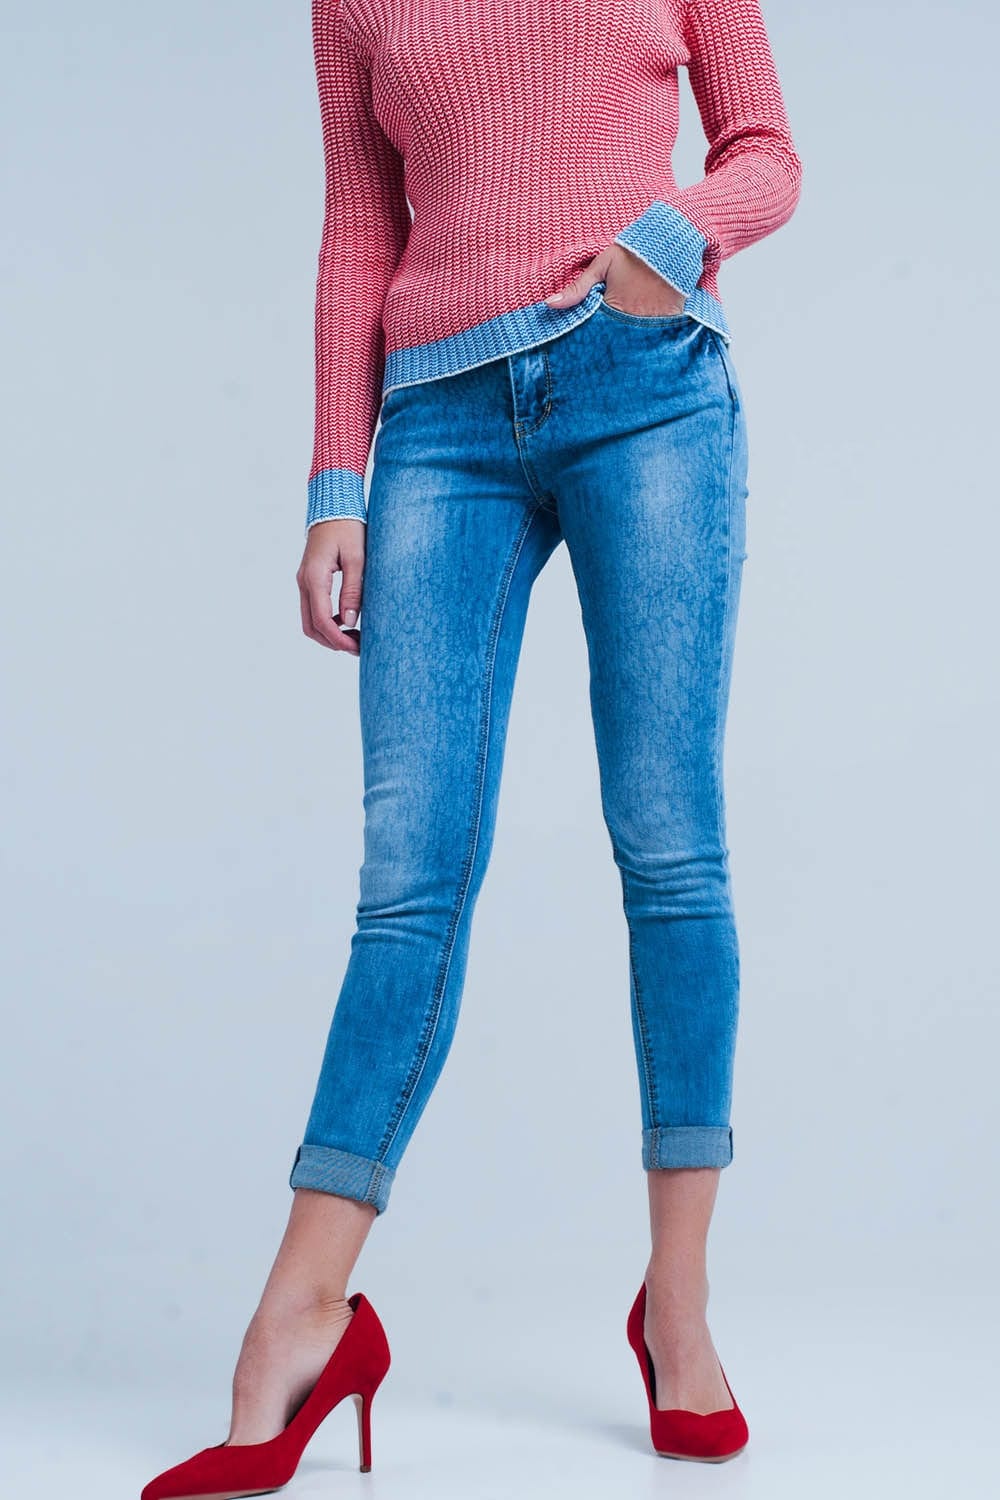 Q2 Women's Jean Medium wash skinny jeans with leopard print